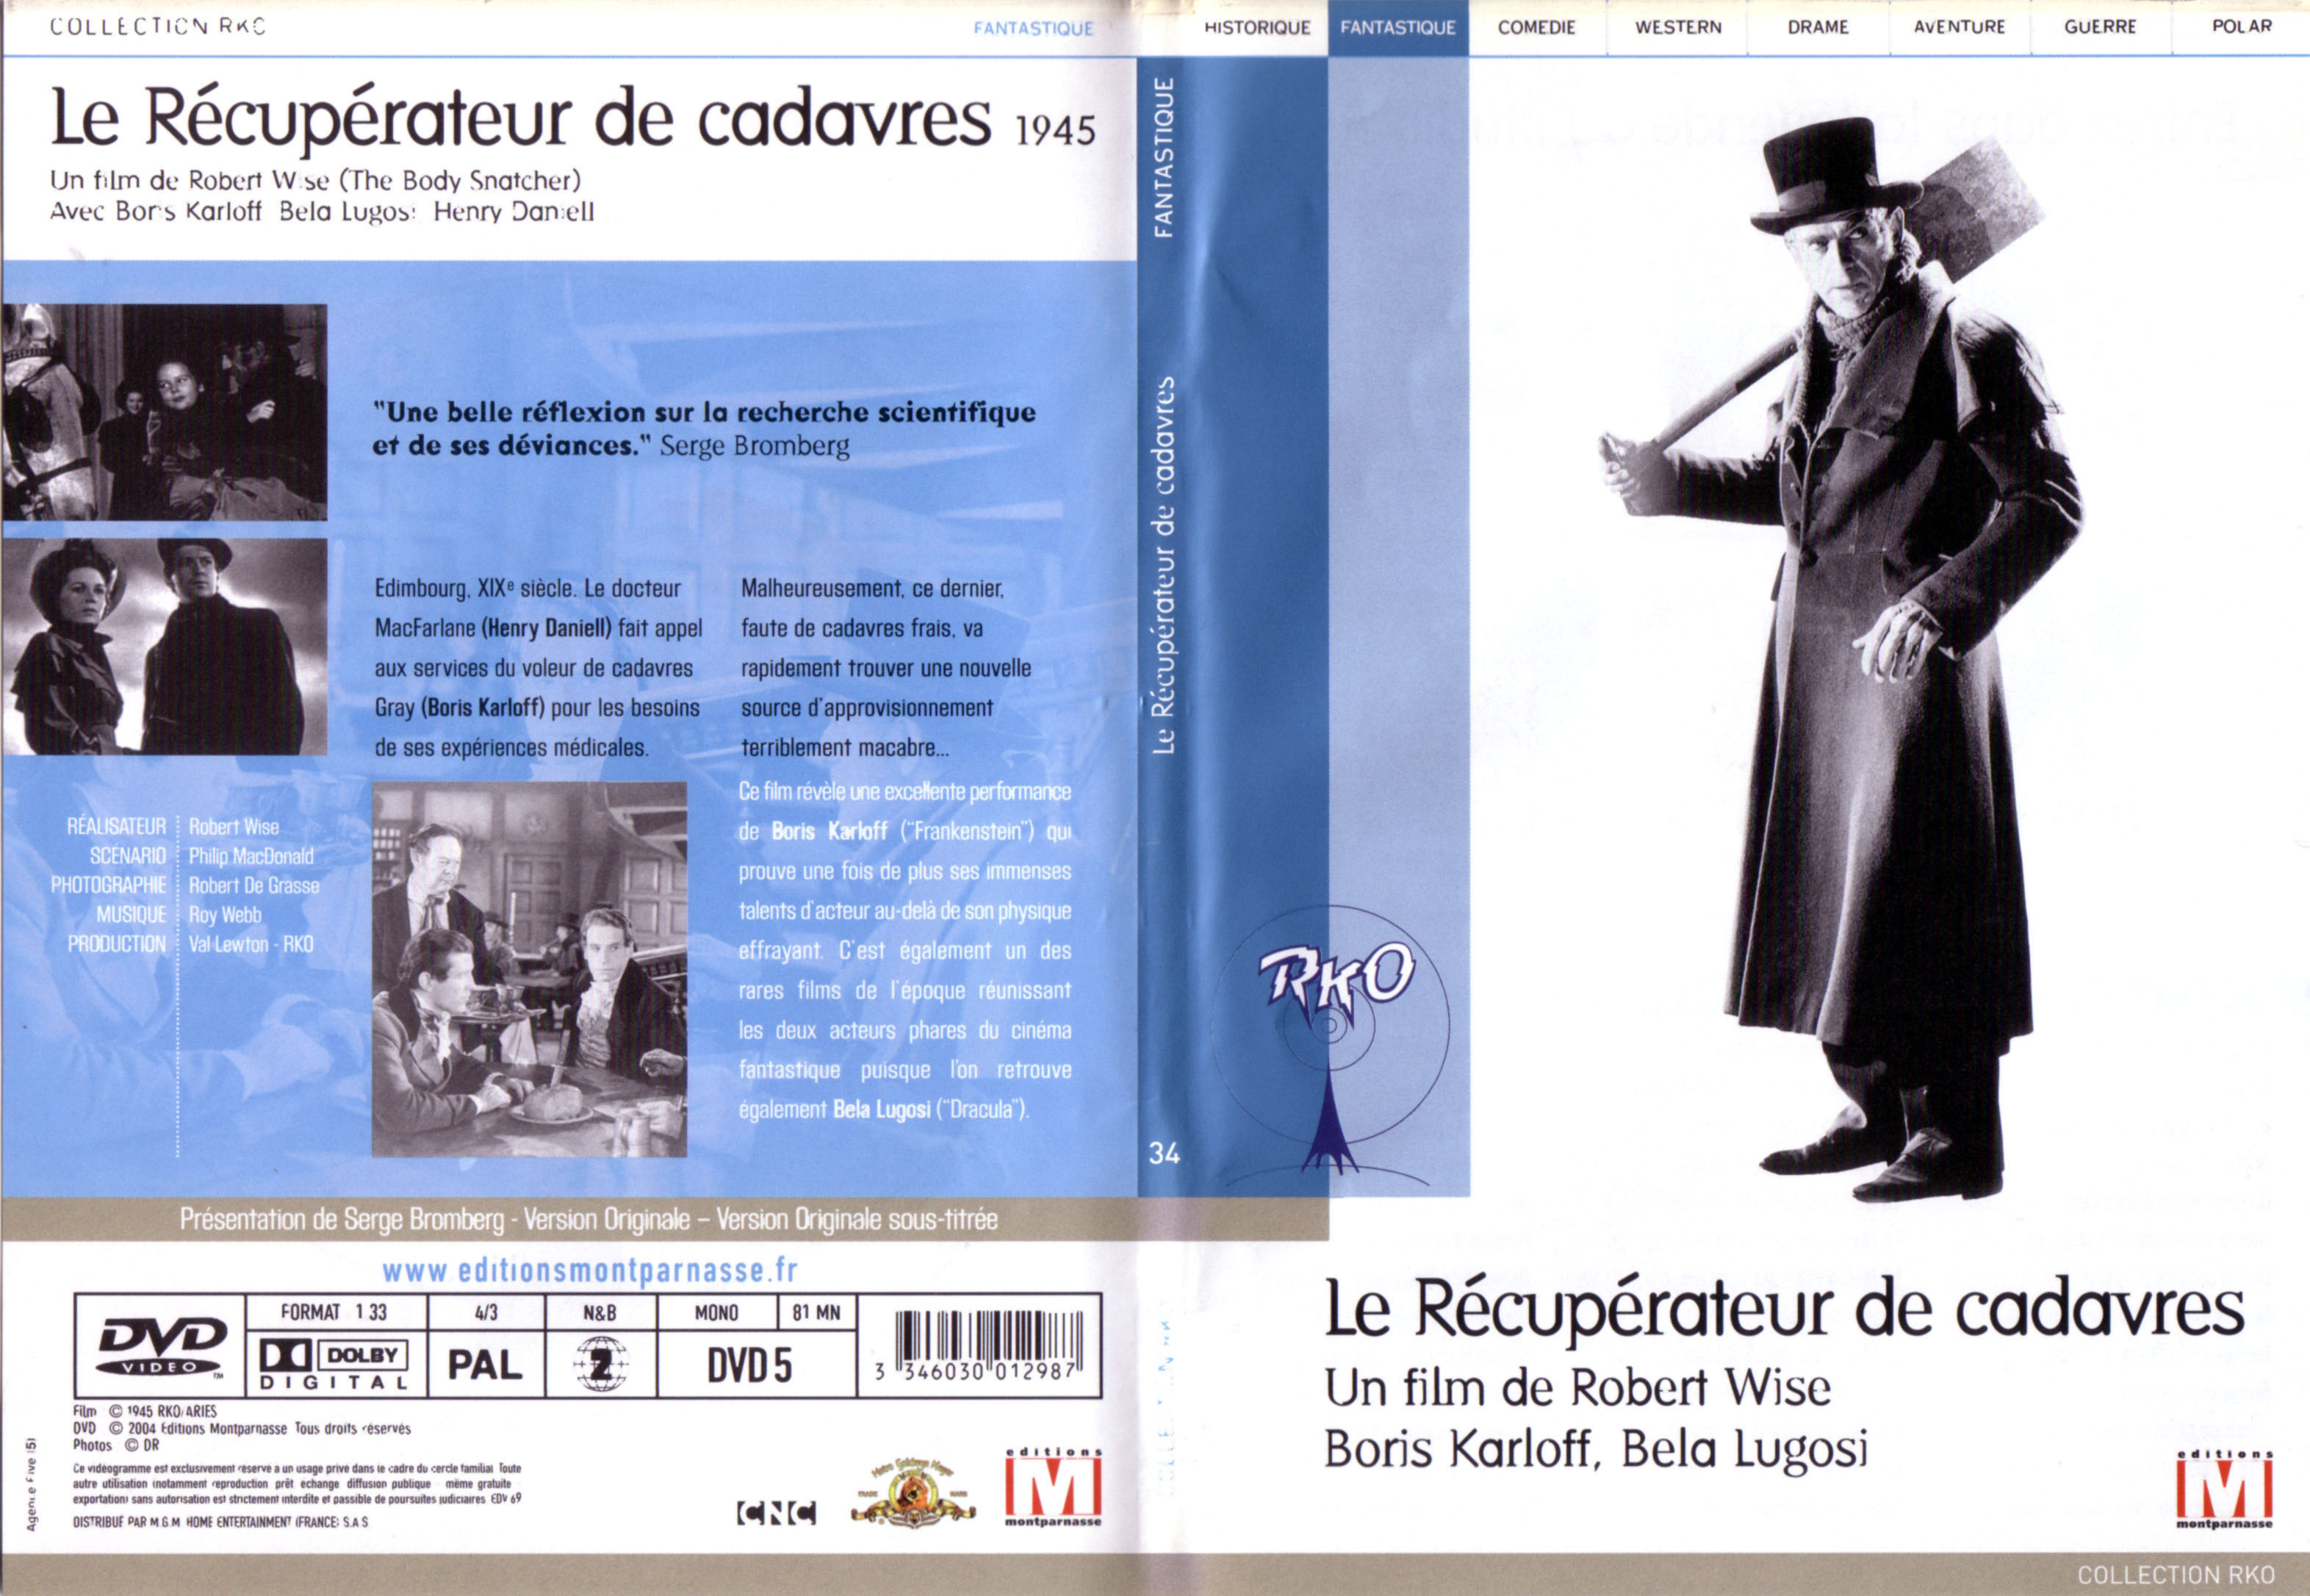 Jaquette DVD Le recuperateur de cadavres v2